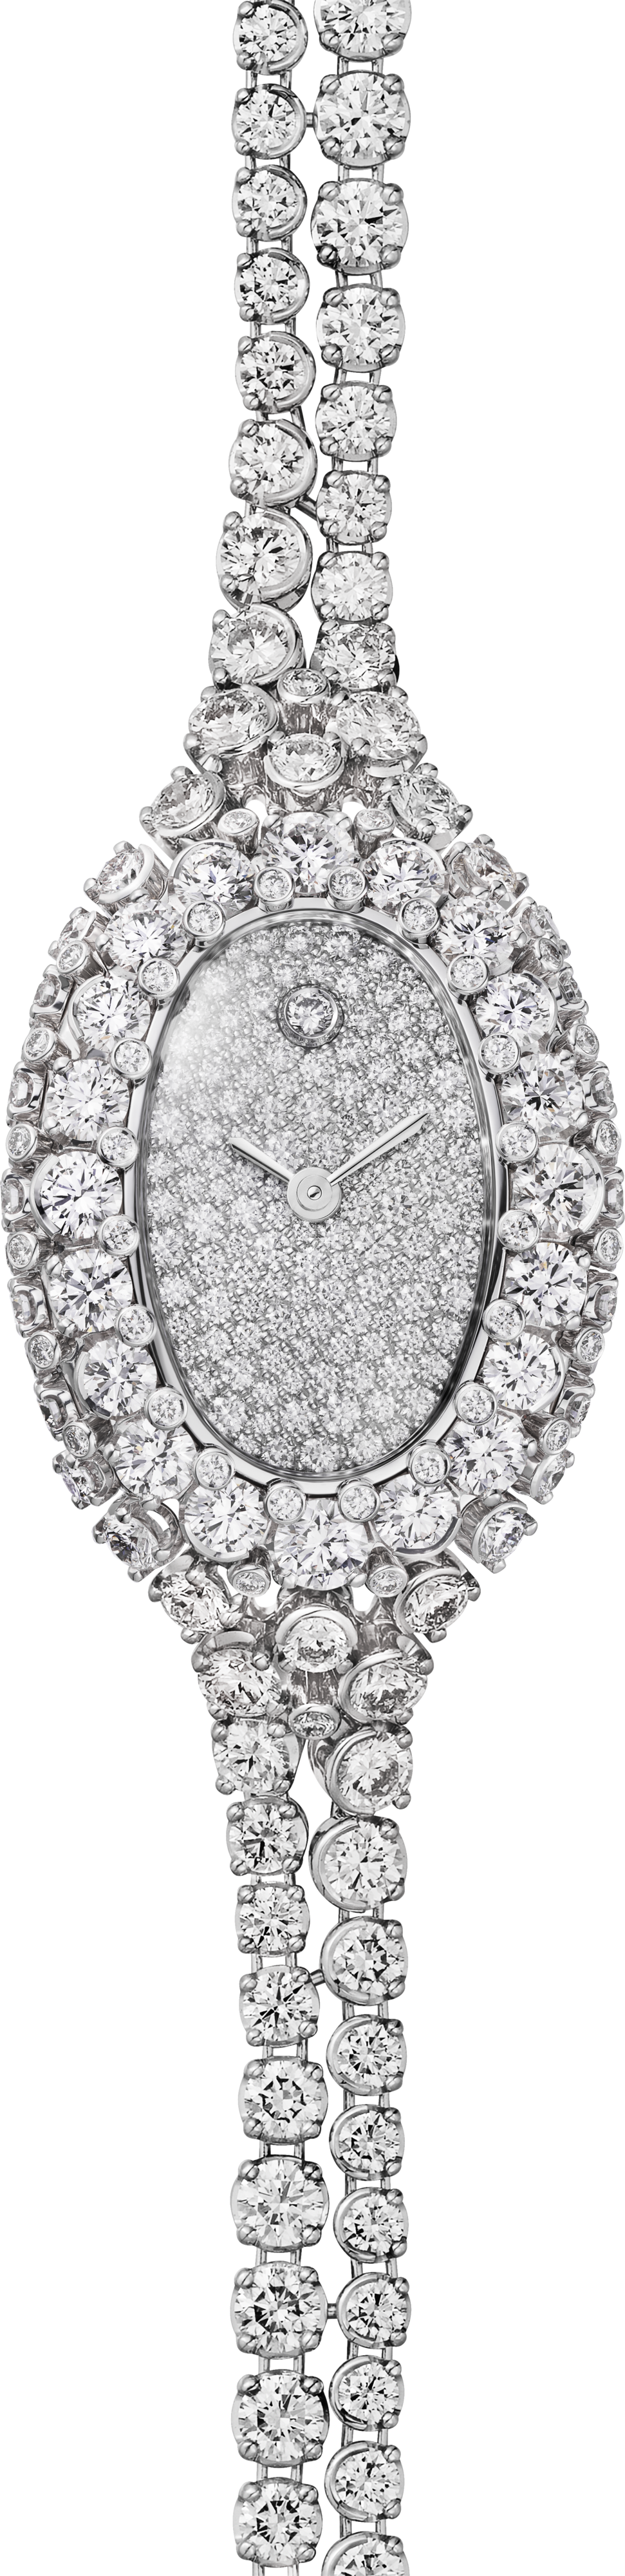 Baignoire jewellery watchMini model, quartz movement, white gold, diamonds